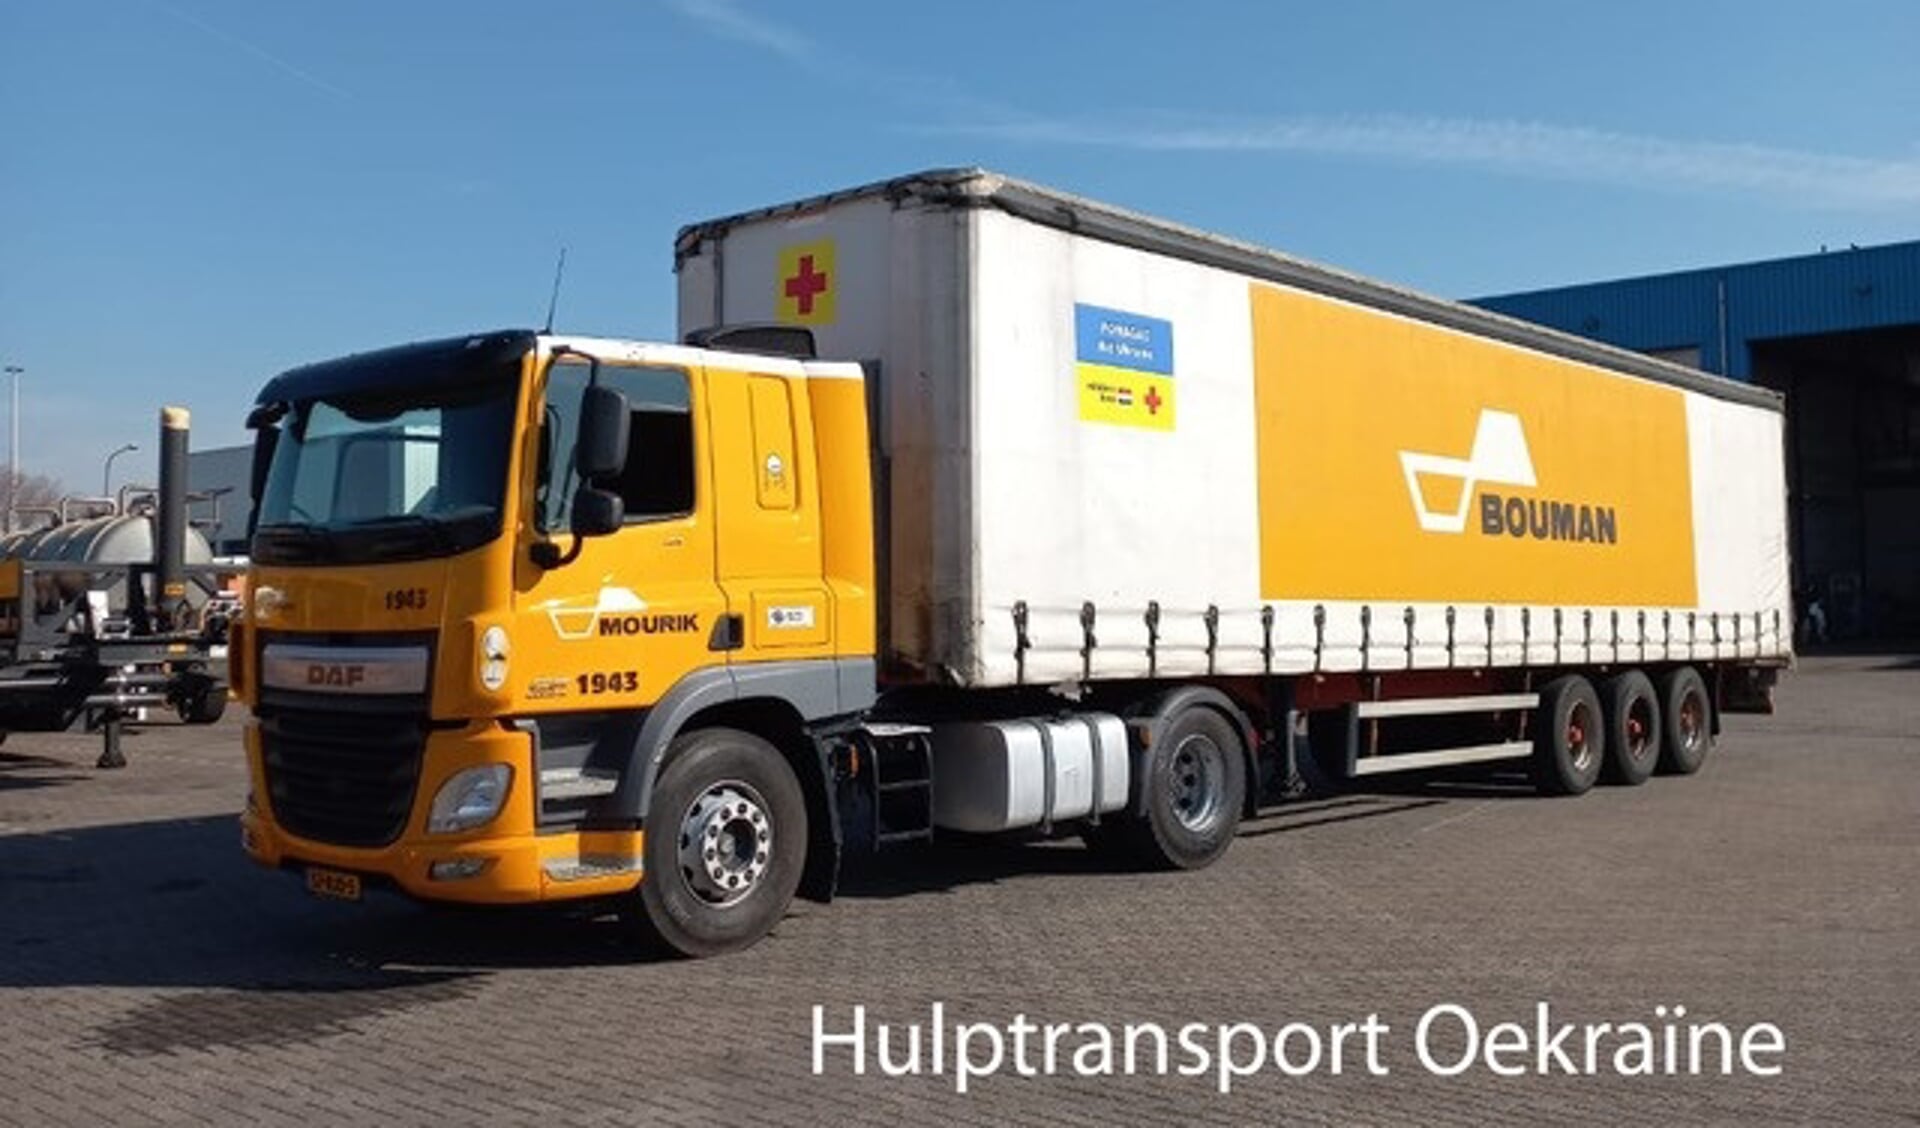 De vrachtwagen is voorzien van stickers van het Rode Kruis/hulptransport Oekraïne. 